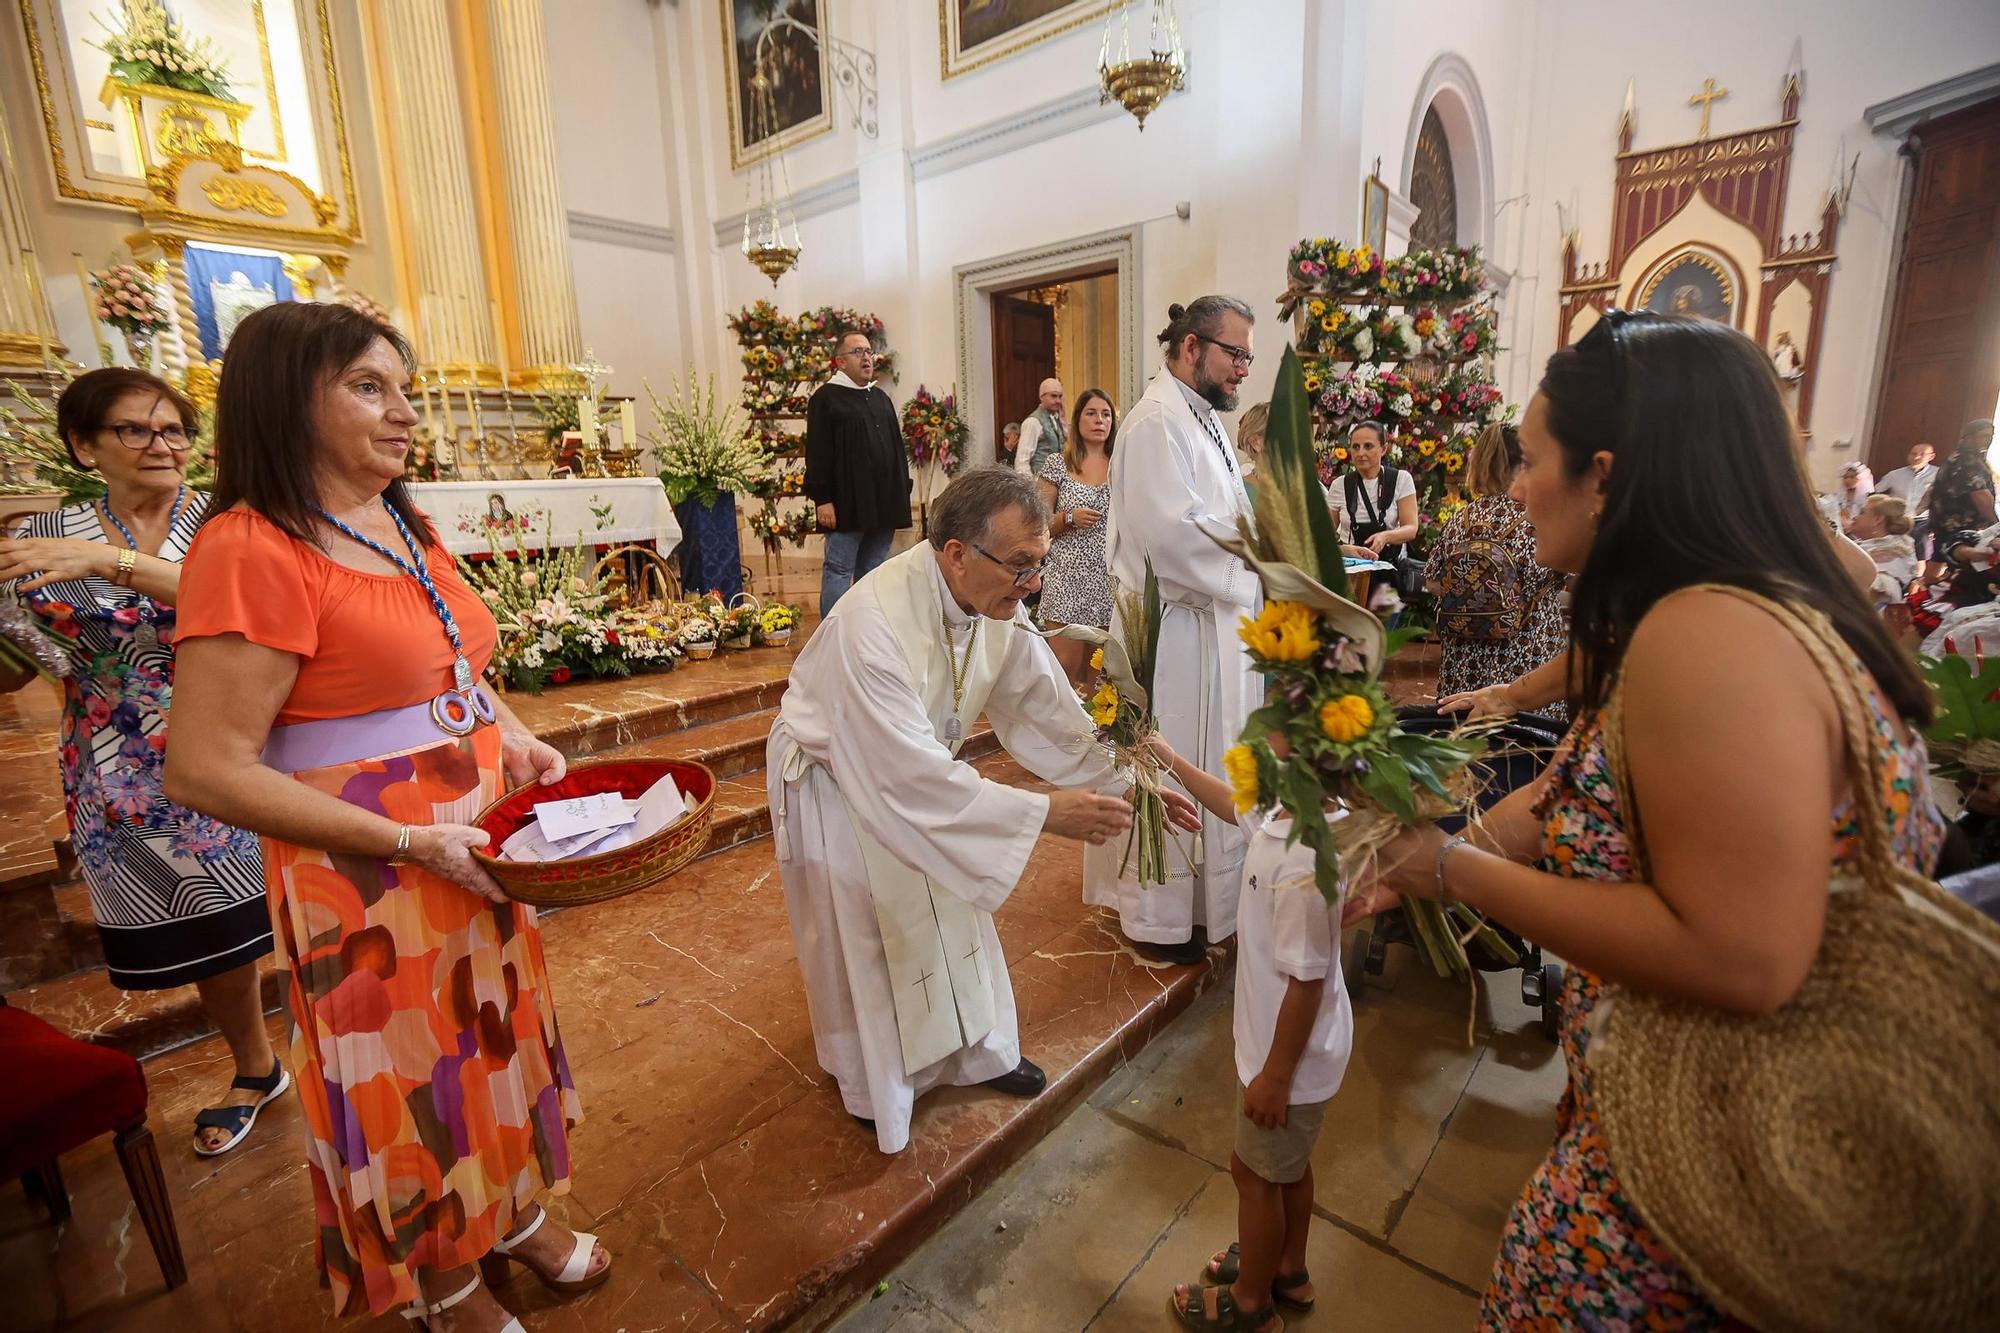 Ofrenda de flores a la Virgen de Loreto fiestas de Muchamiel